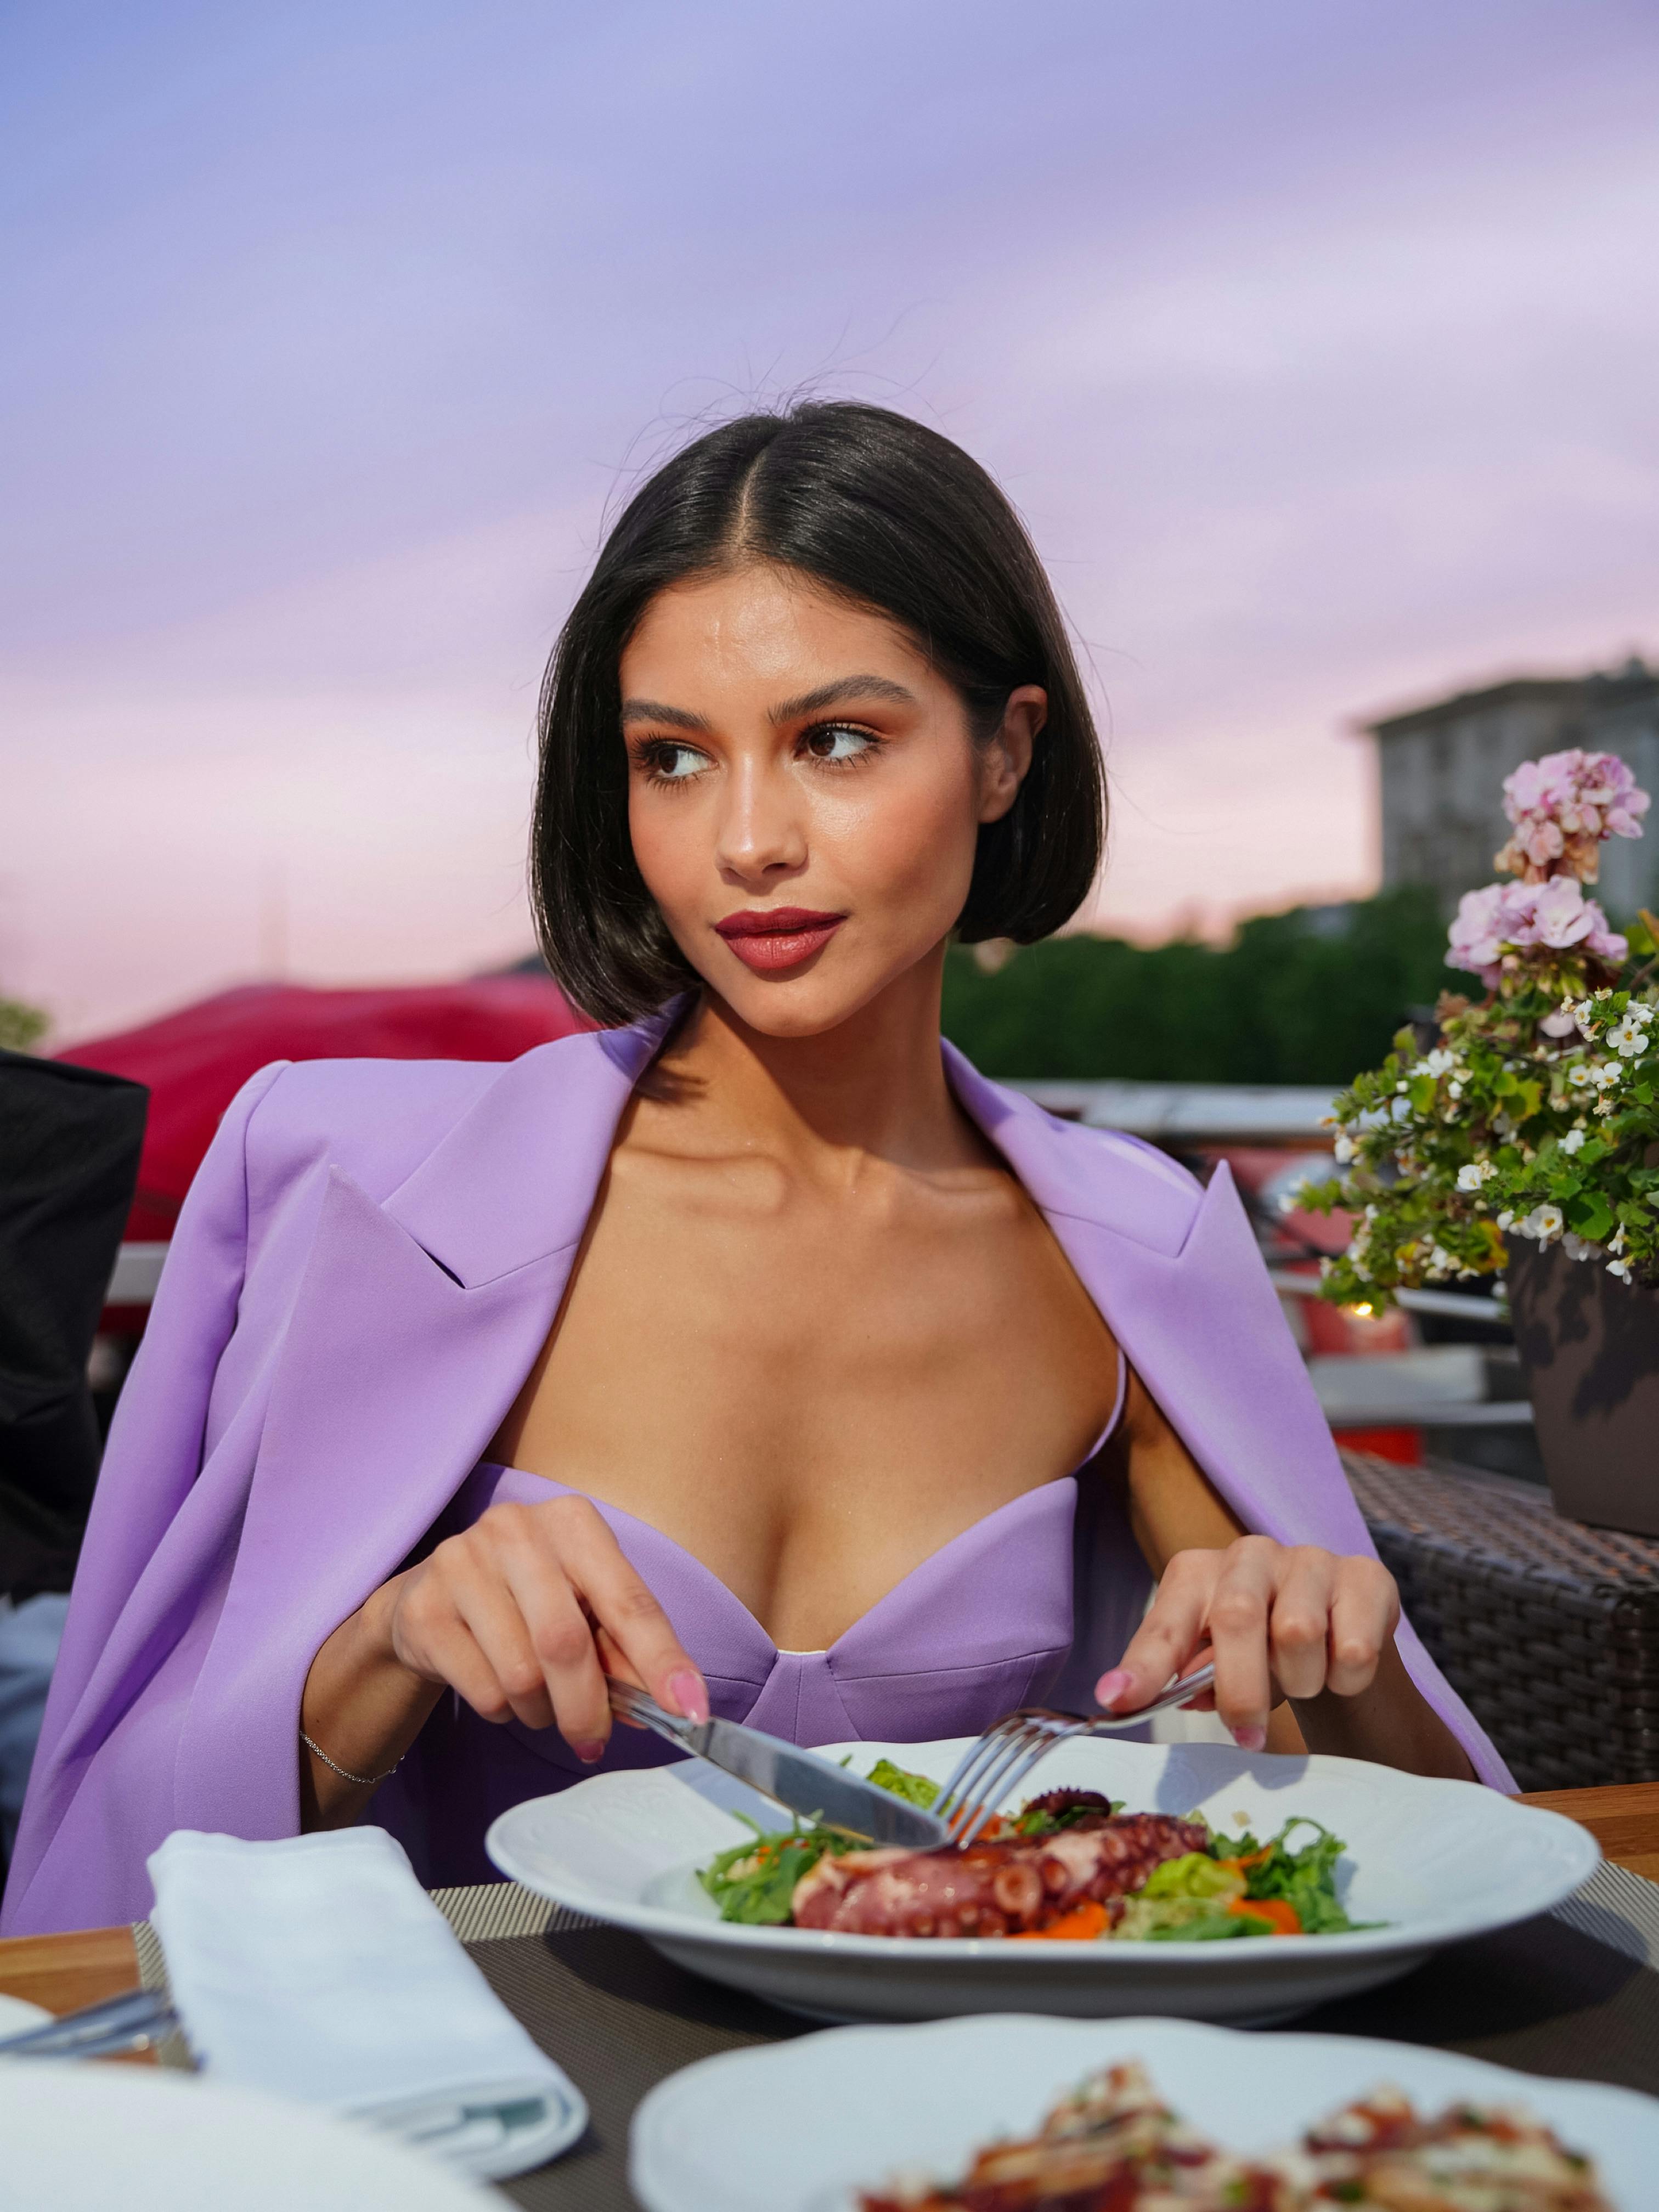 Une femme dégageant une attitude tout en prenant un repas | Source : Pexels